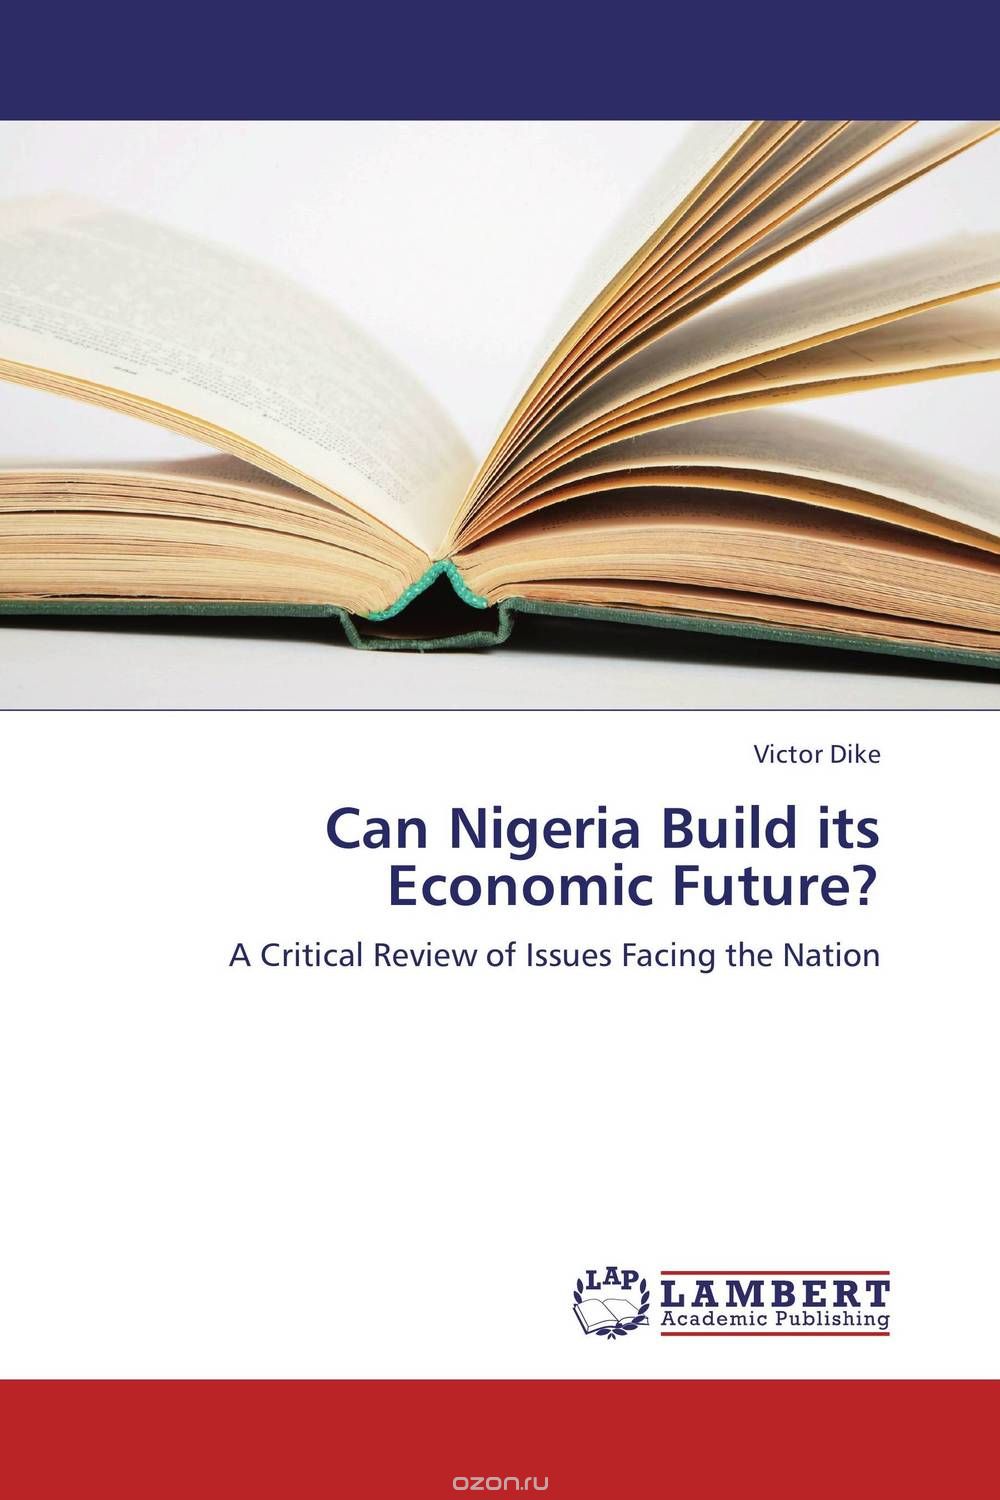 Скачать книгу "Can Nigeria Build its Economic Future?"